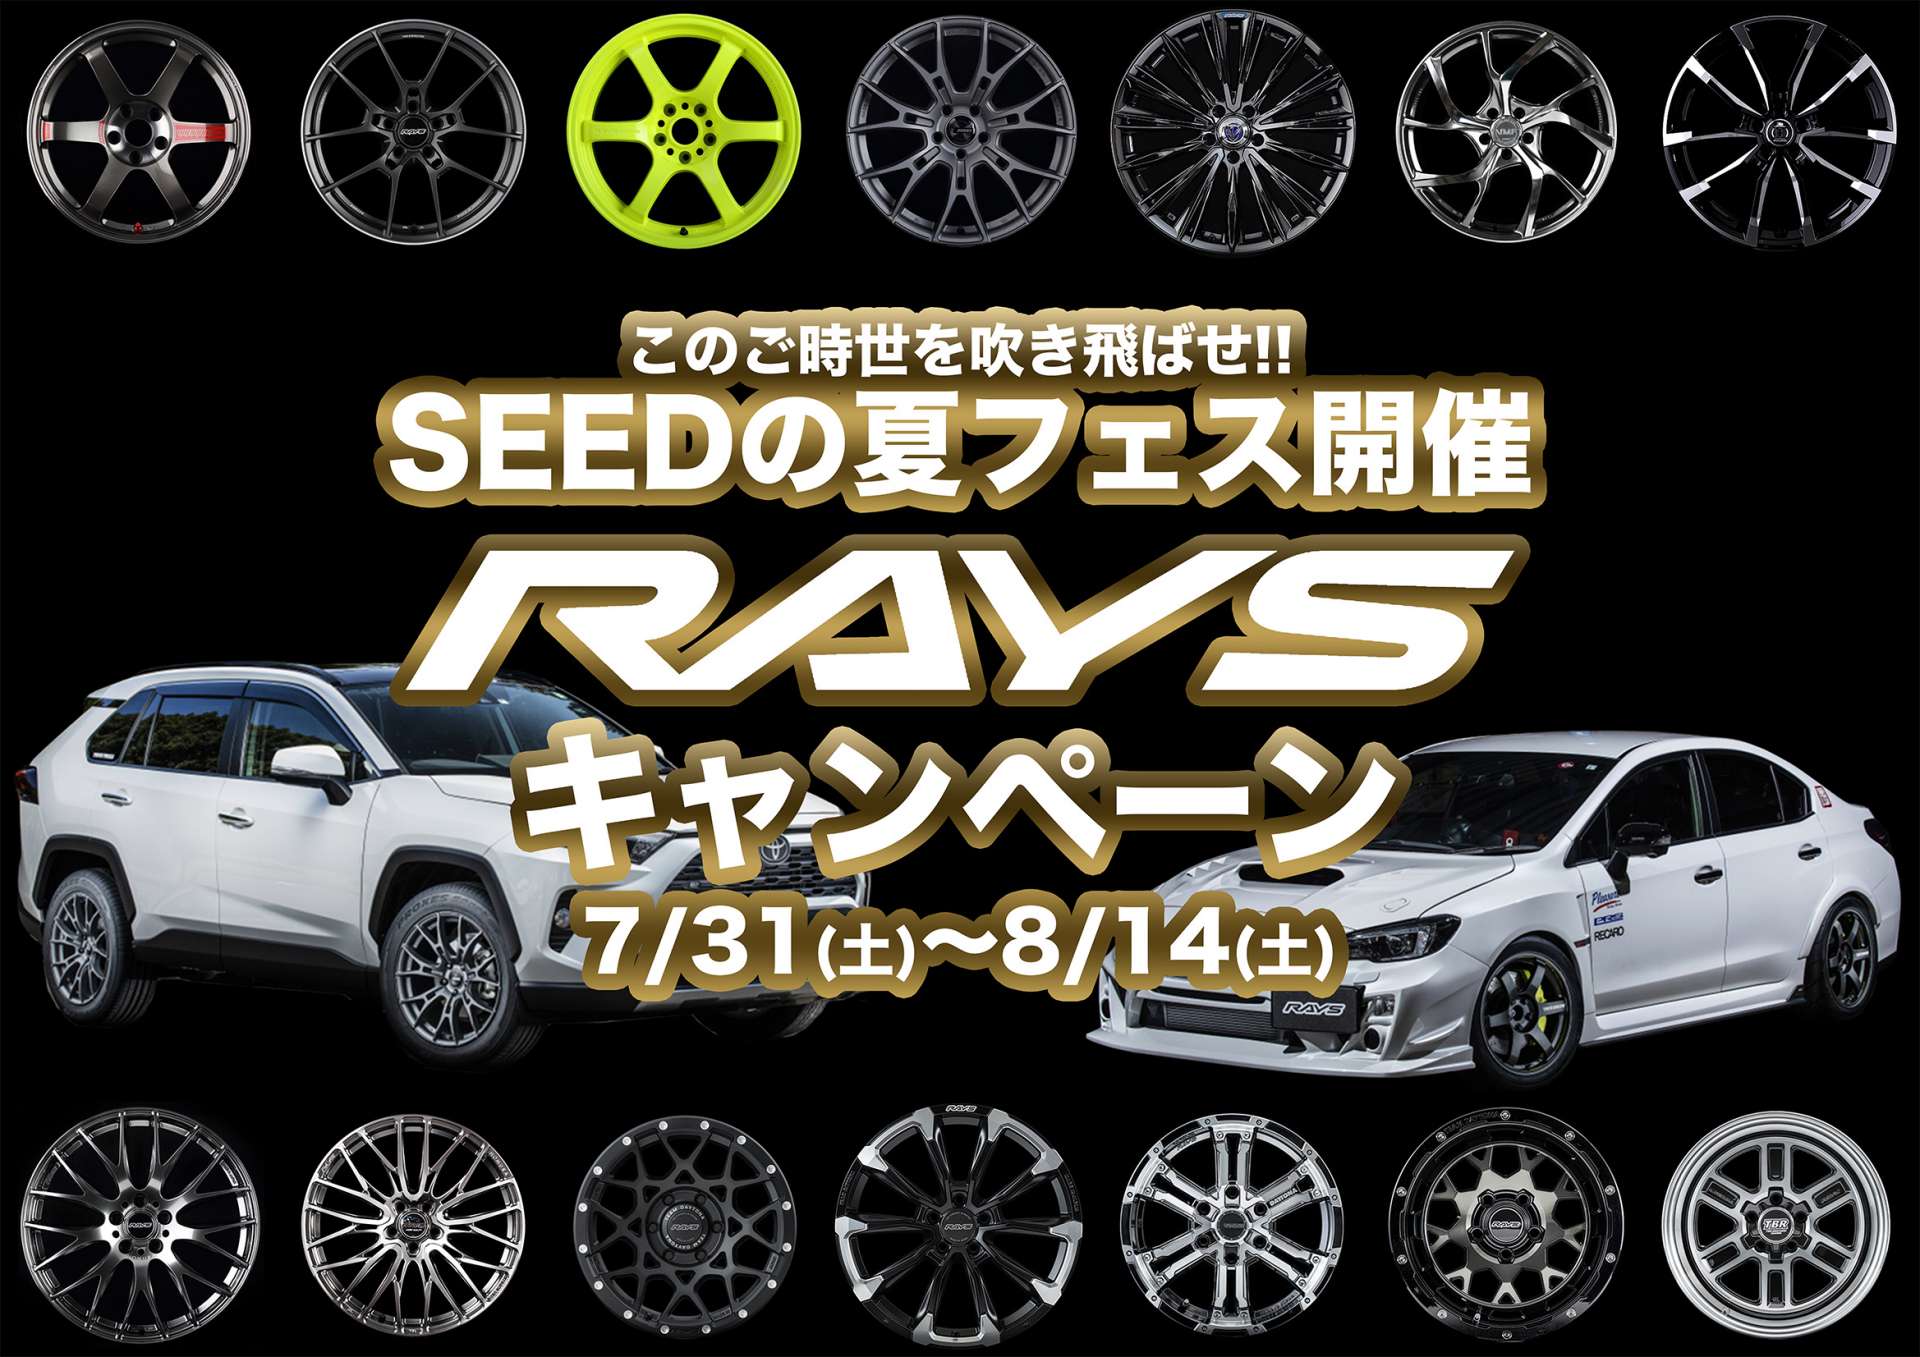 【SEEDの夏フェス開催決定!!】RAYSキャンペーン【お見逃しなく!!】